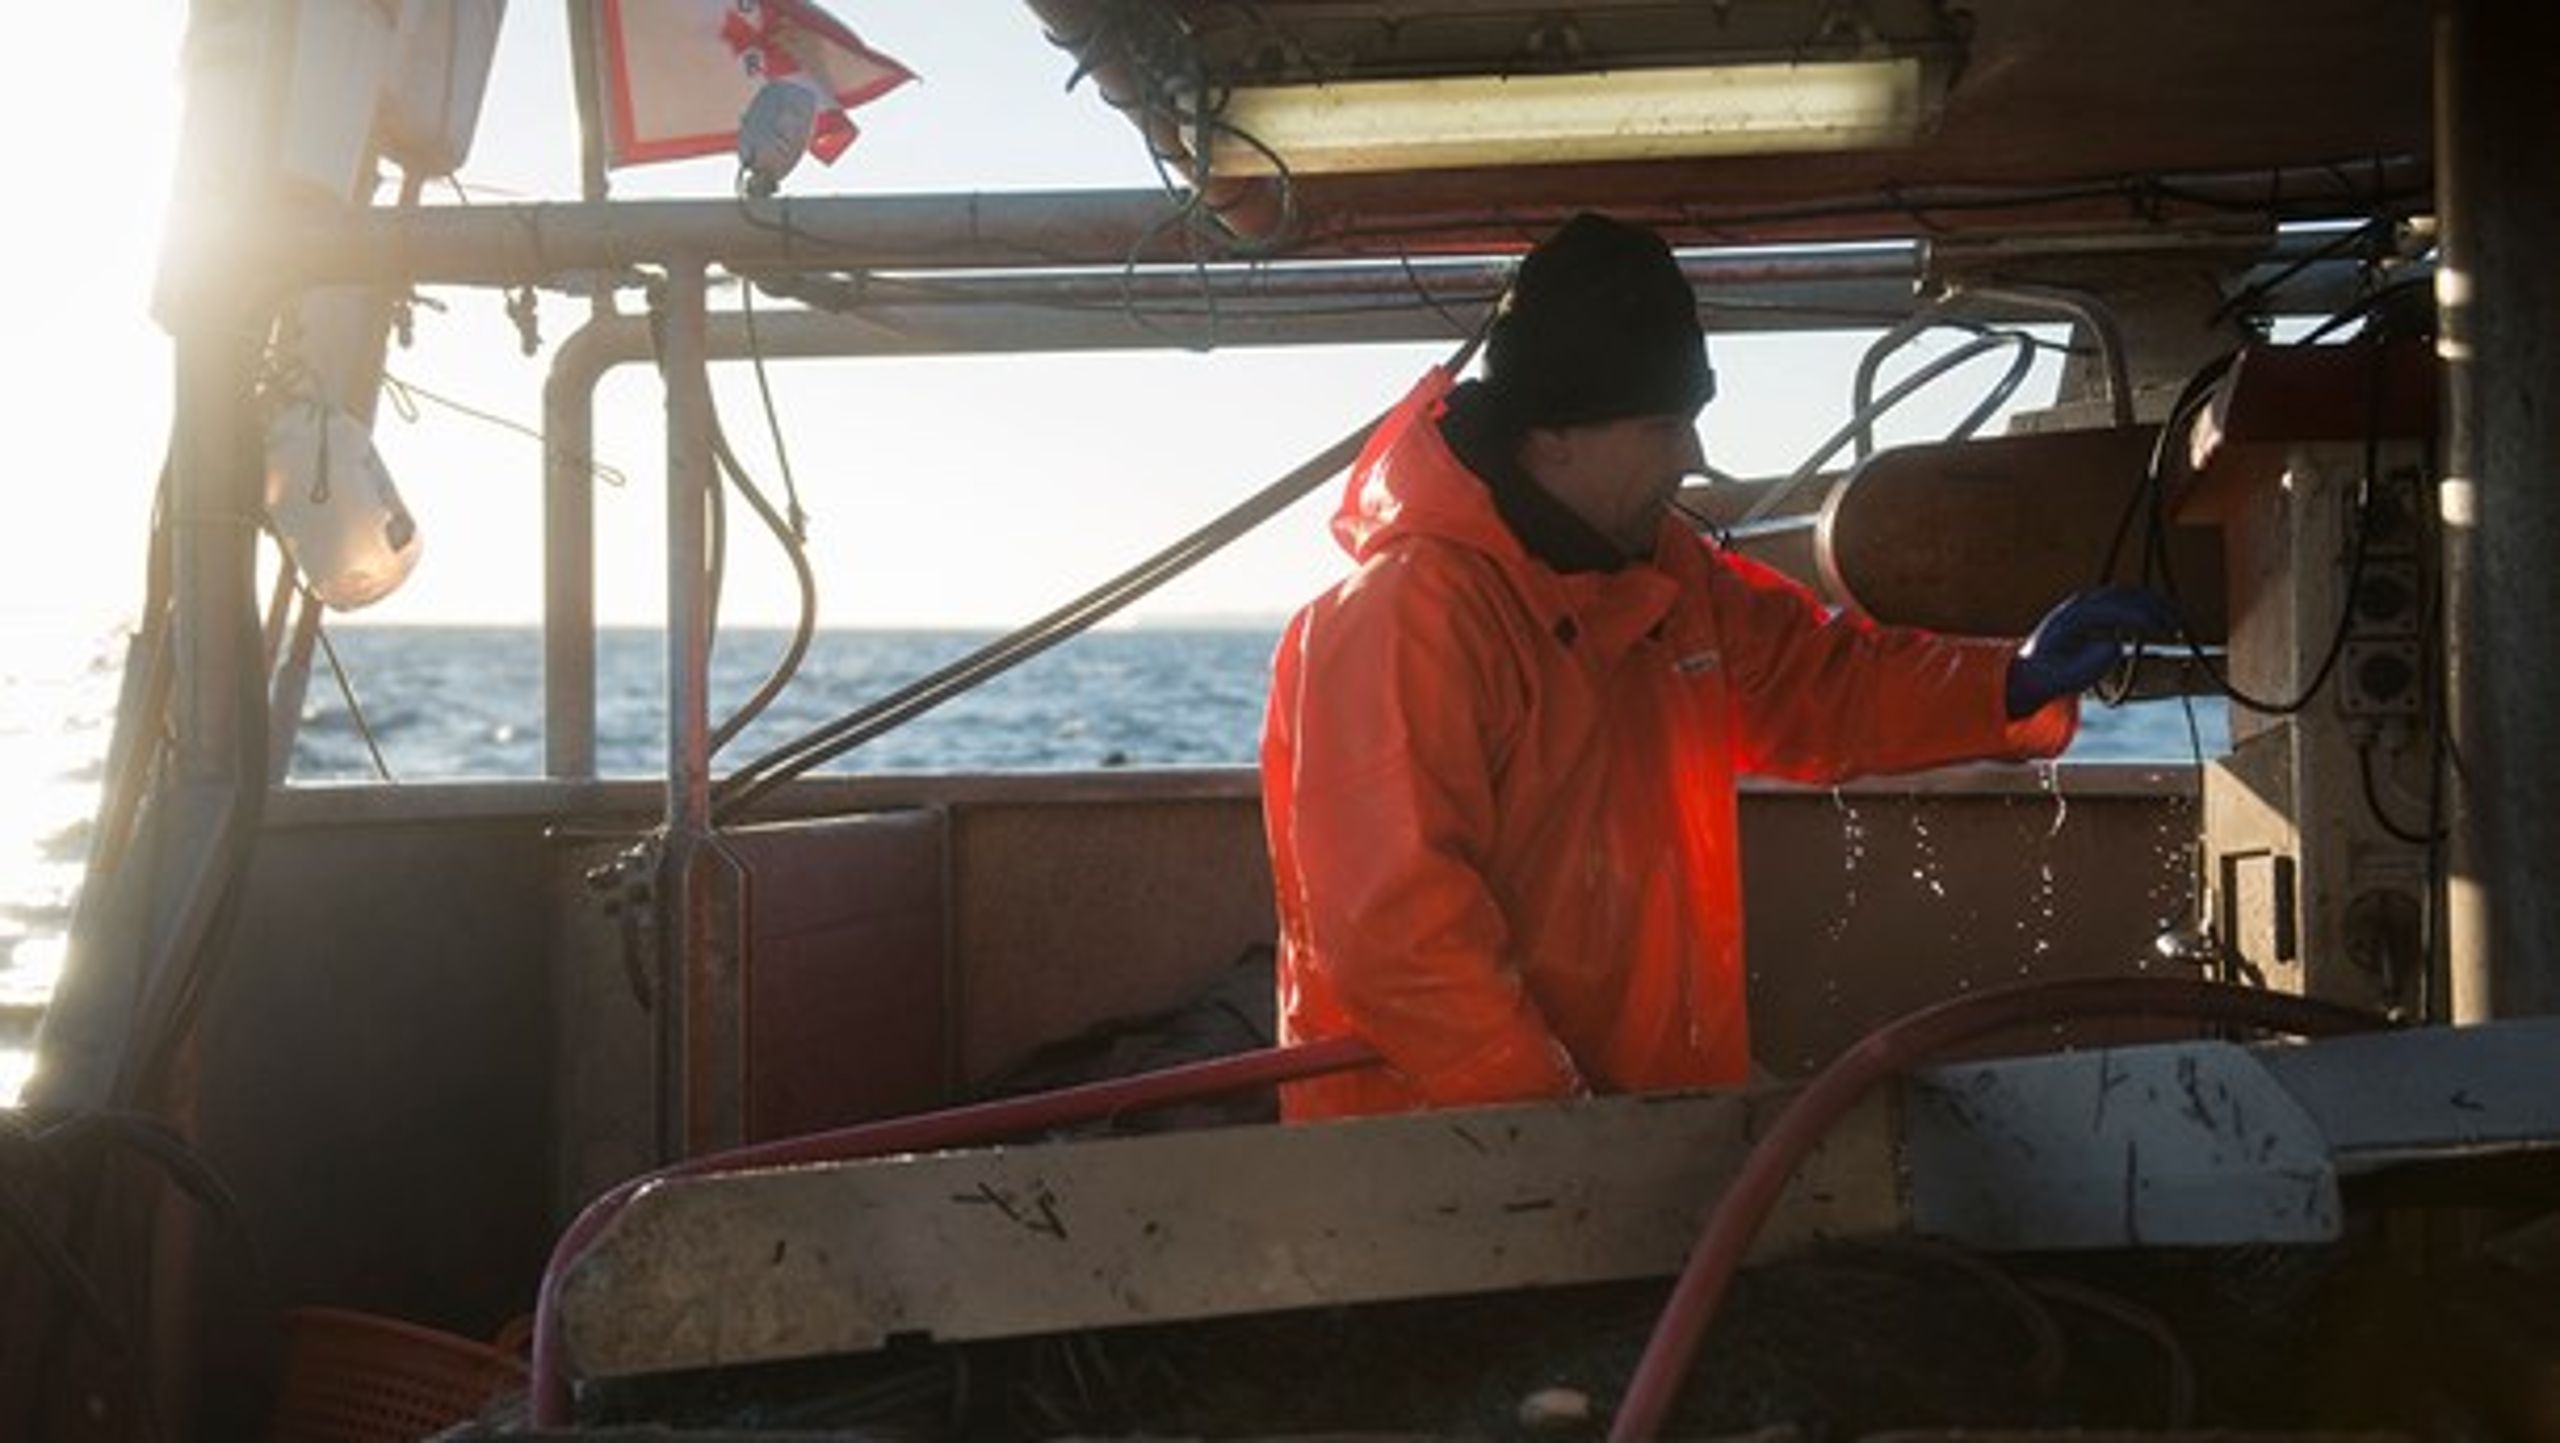 Det skånsomme kystfiskeri skal ses som en del af løsningen på at sikre både fiskeri og natur, skriver Søren Jacobsen.